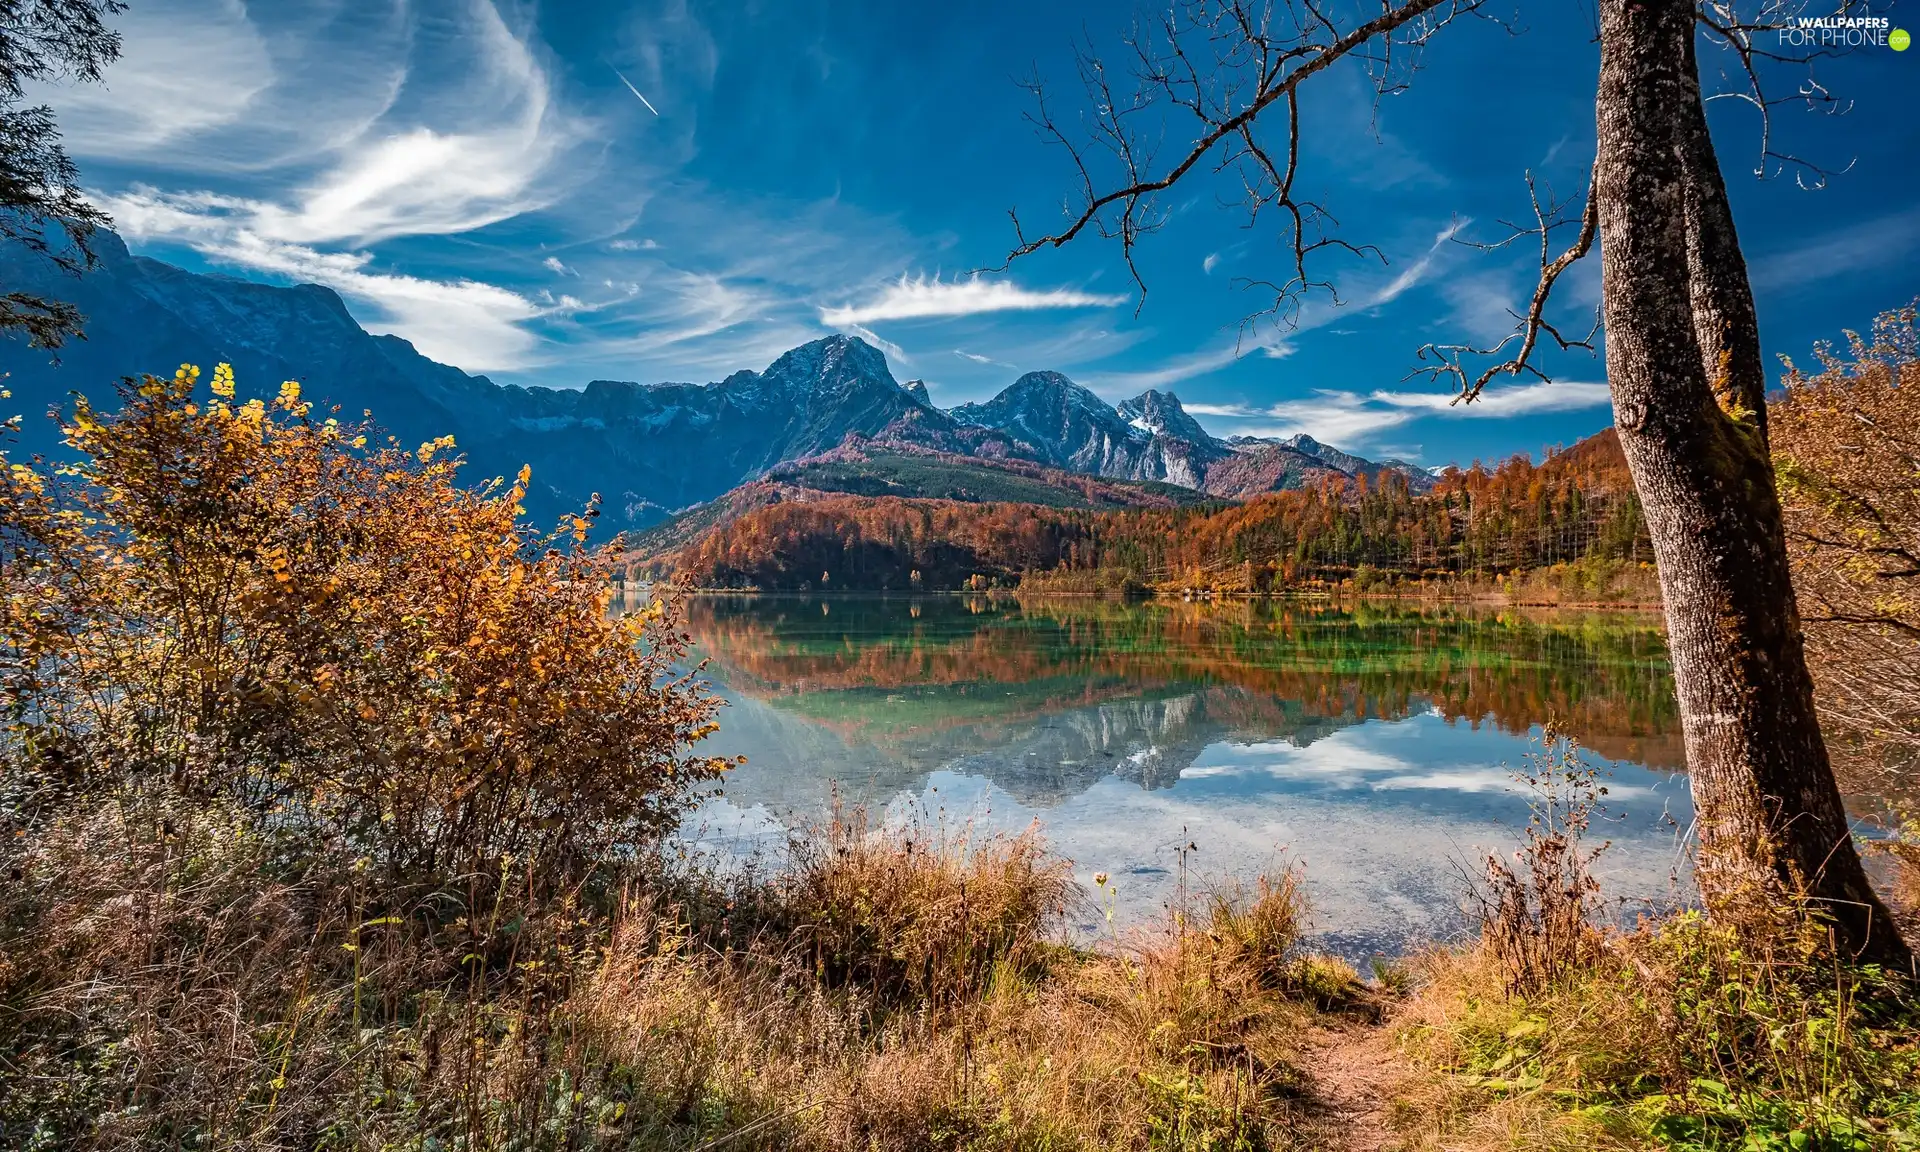 Alps, Almsee Lake, grass, autumn, viewes, Mountains, Austria, trees